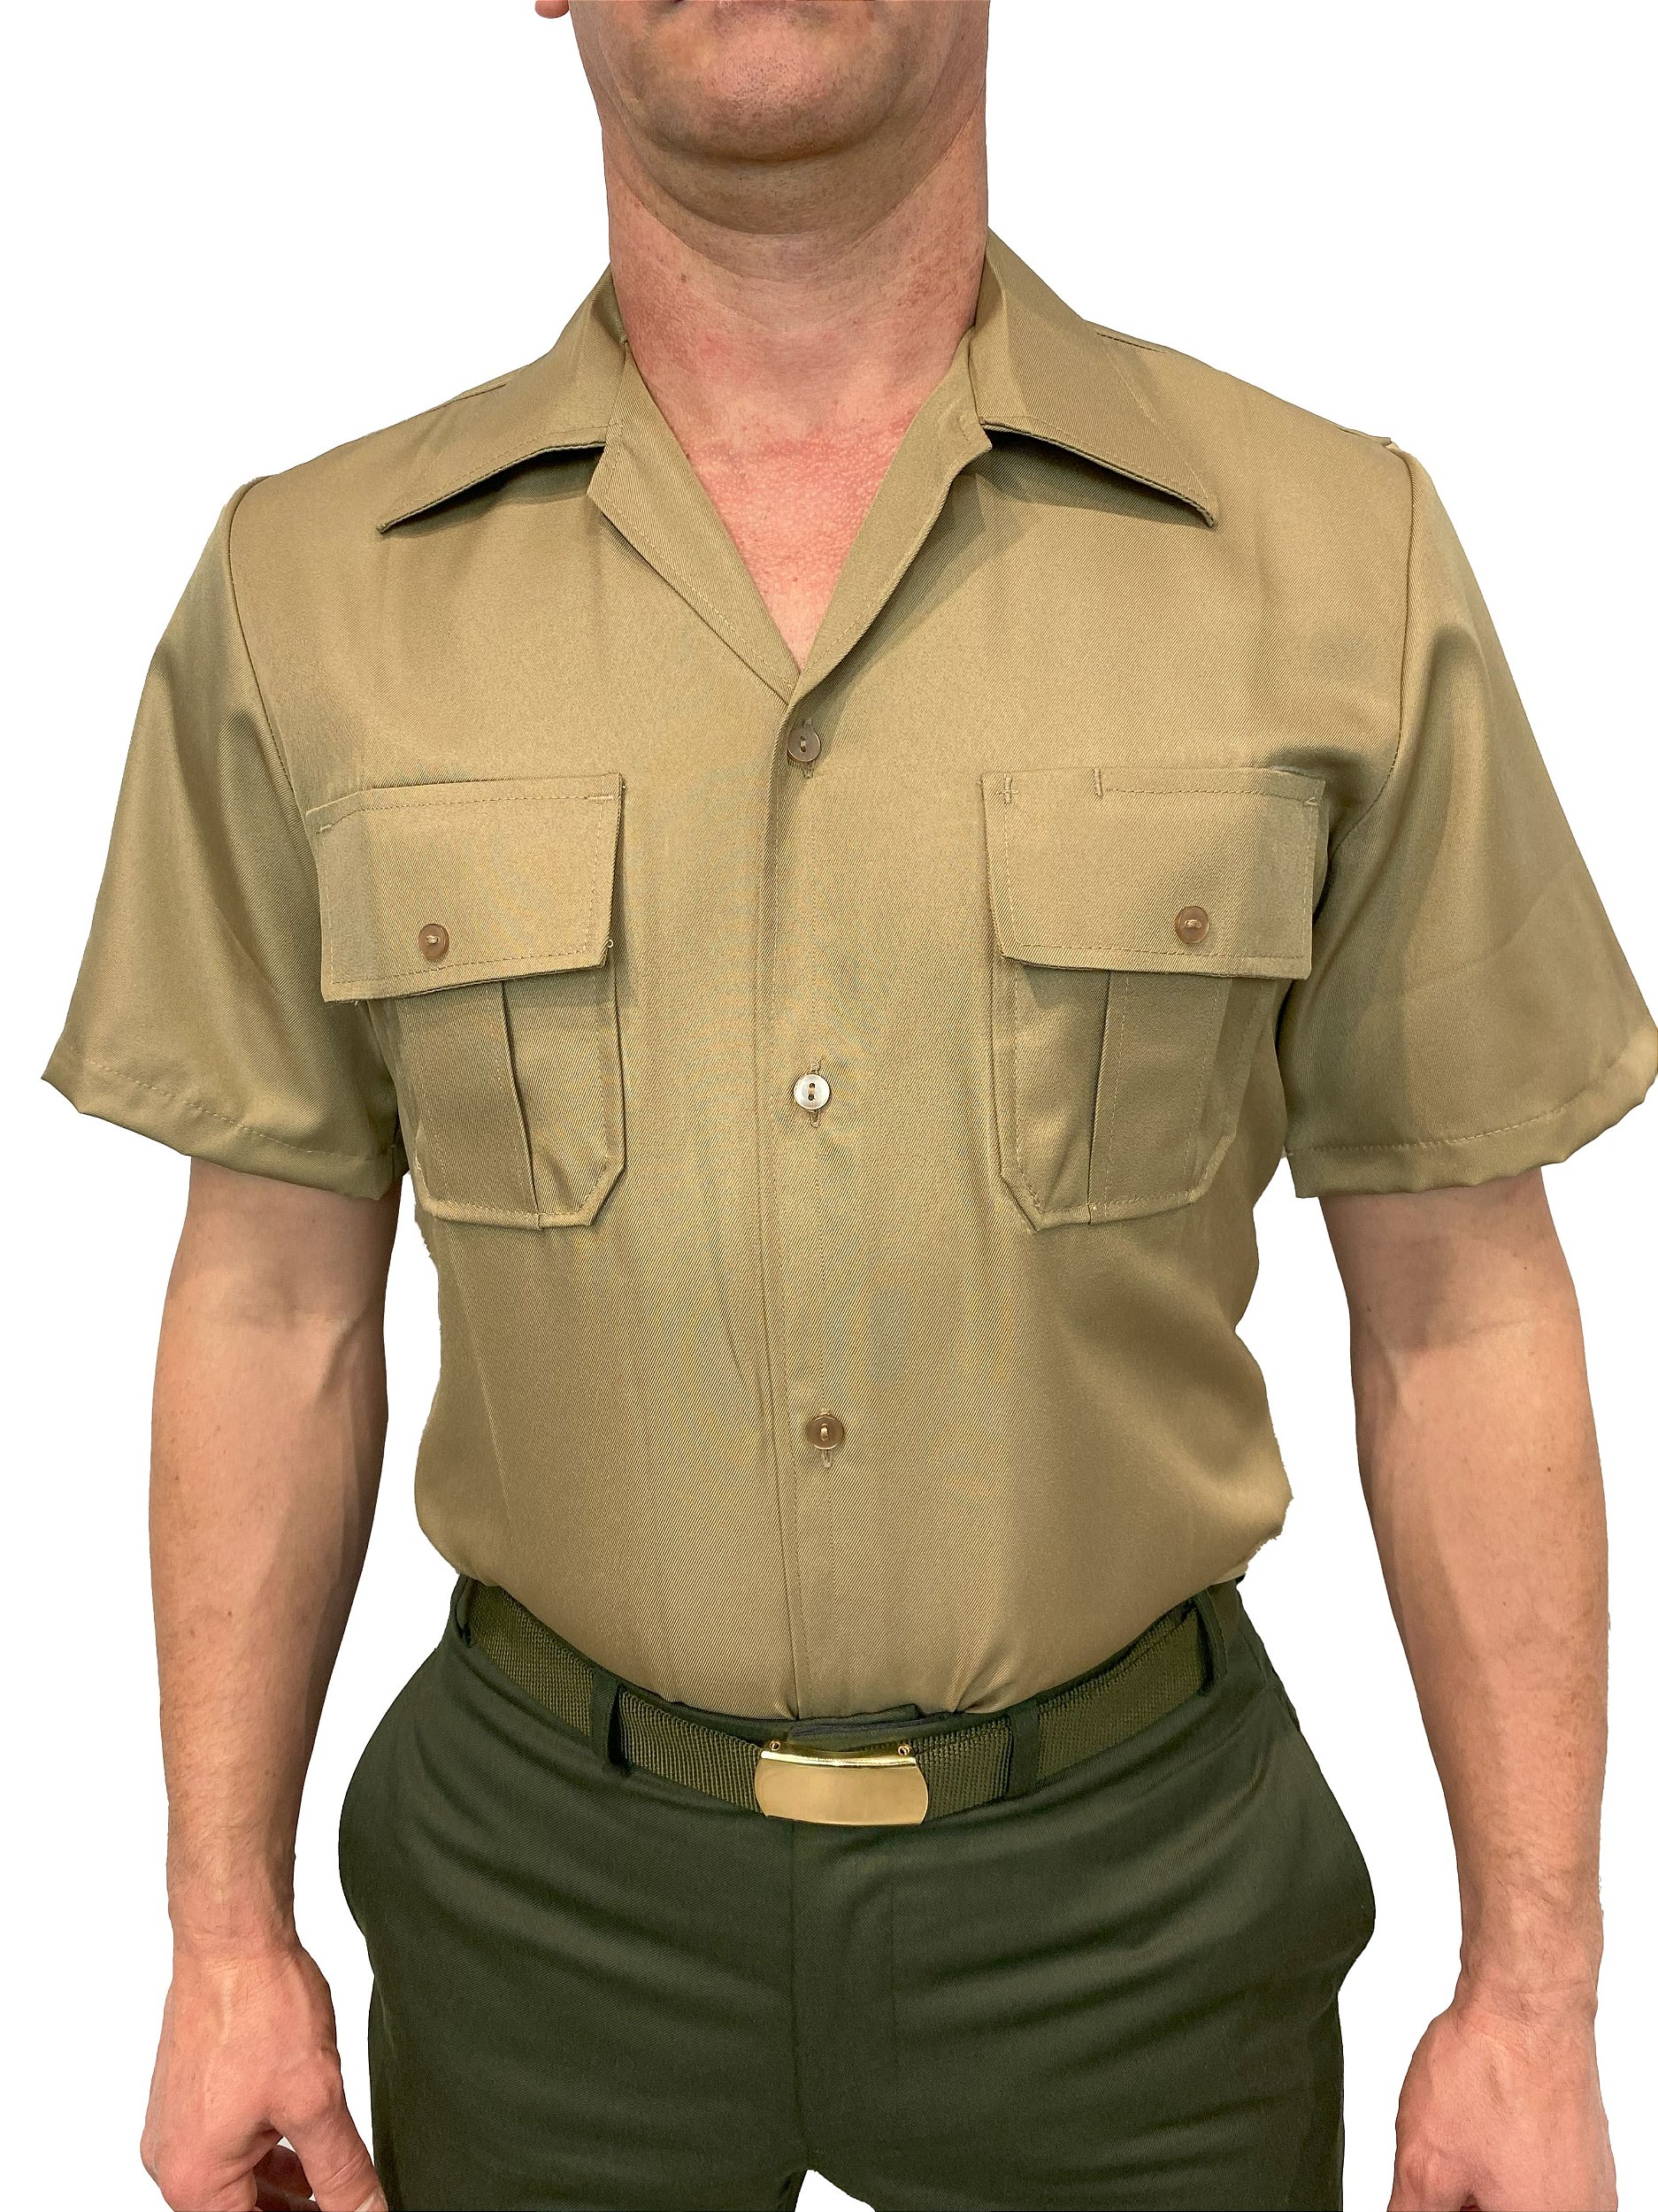 Camisa Bege Exercito Manga Curta - Artigos Militares, Fardas, Uniformes  Militares, Fardas Militares